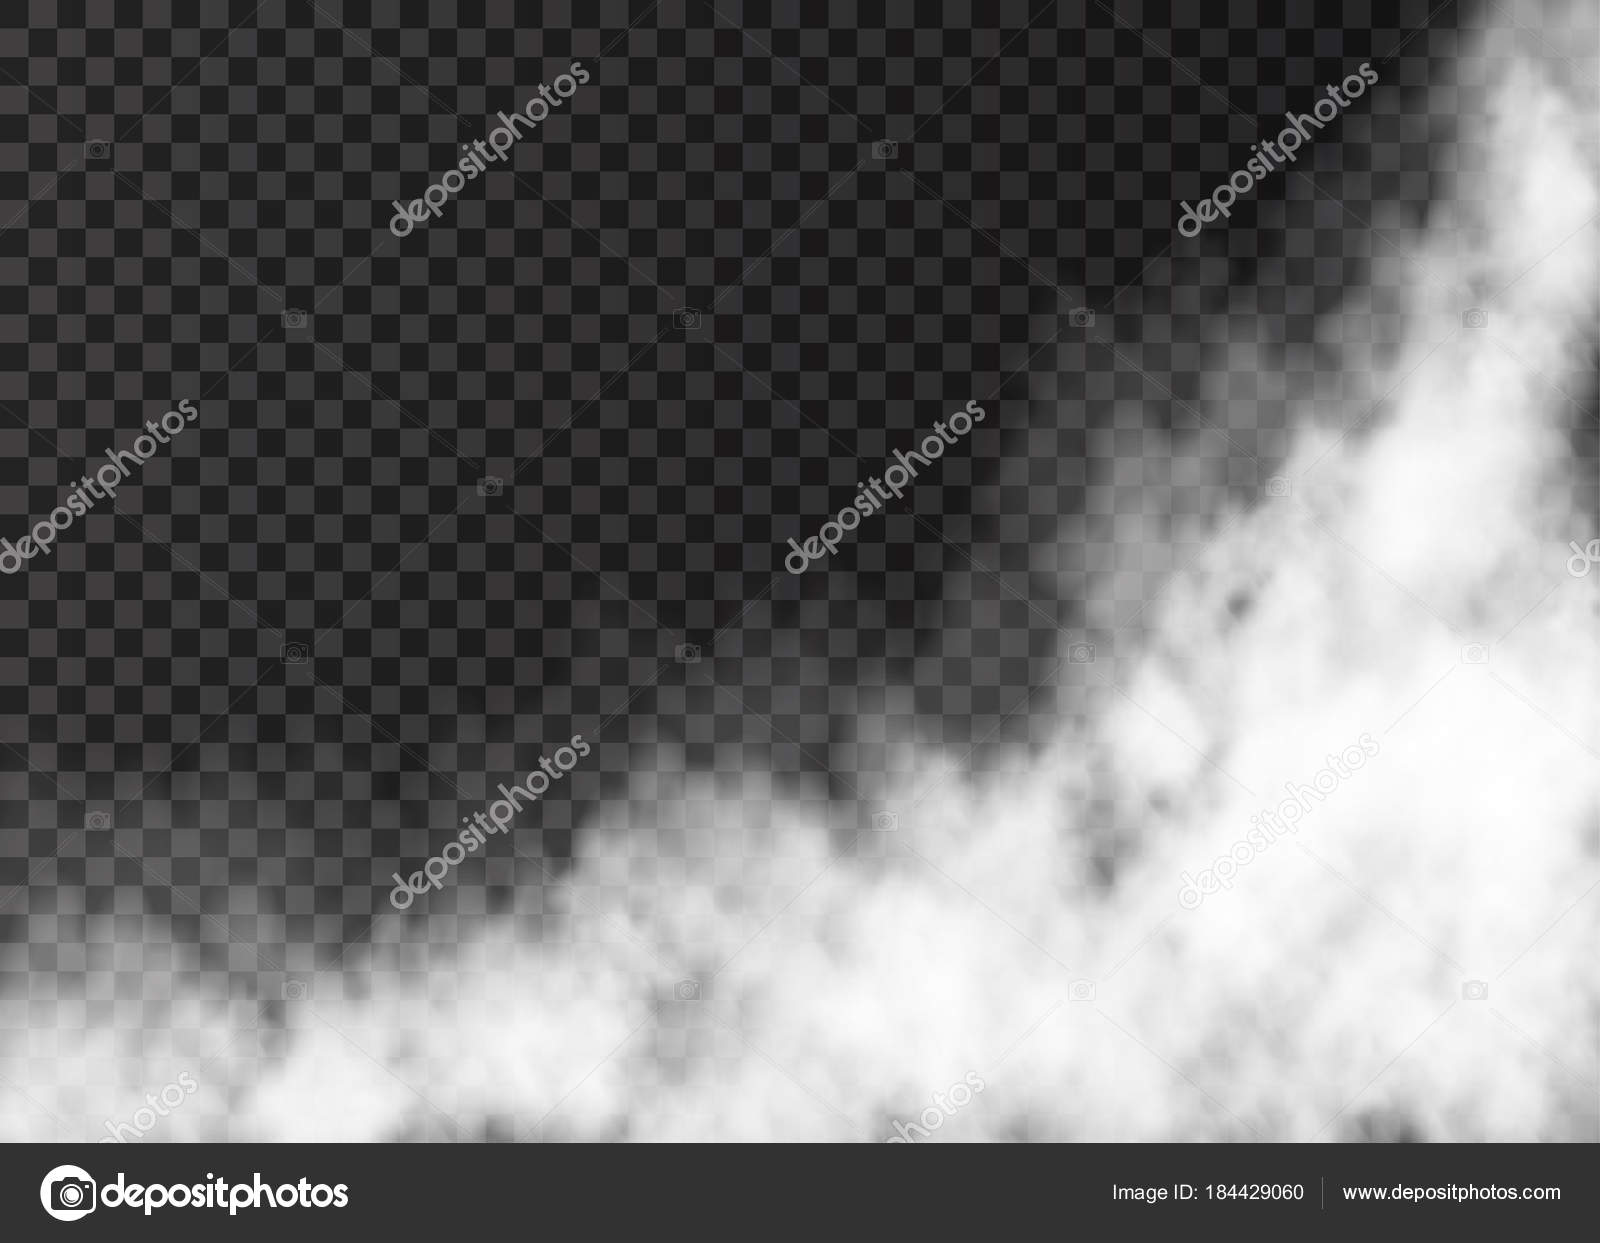 White transparent steam on dark background Vector Image